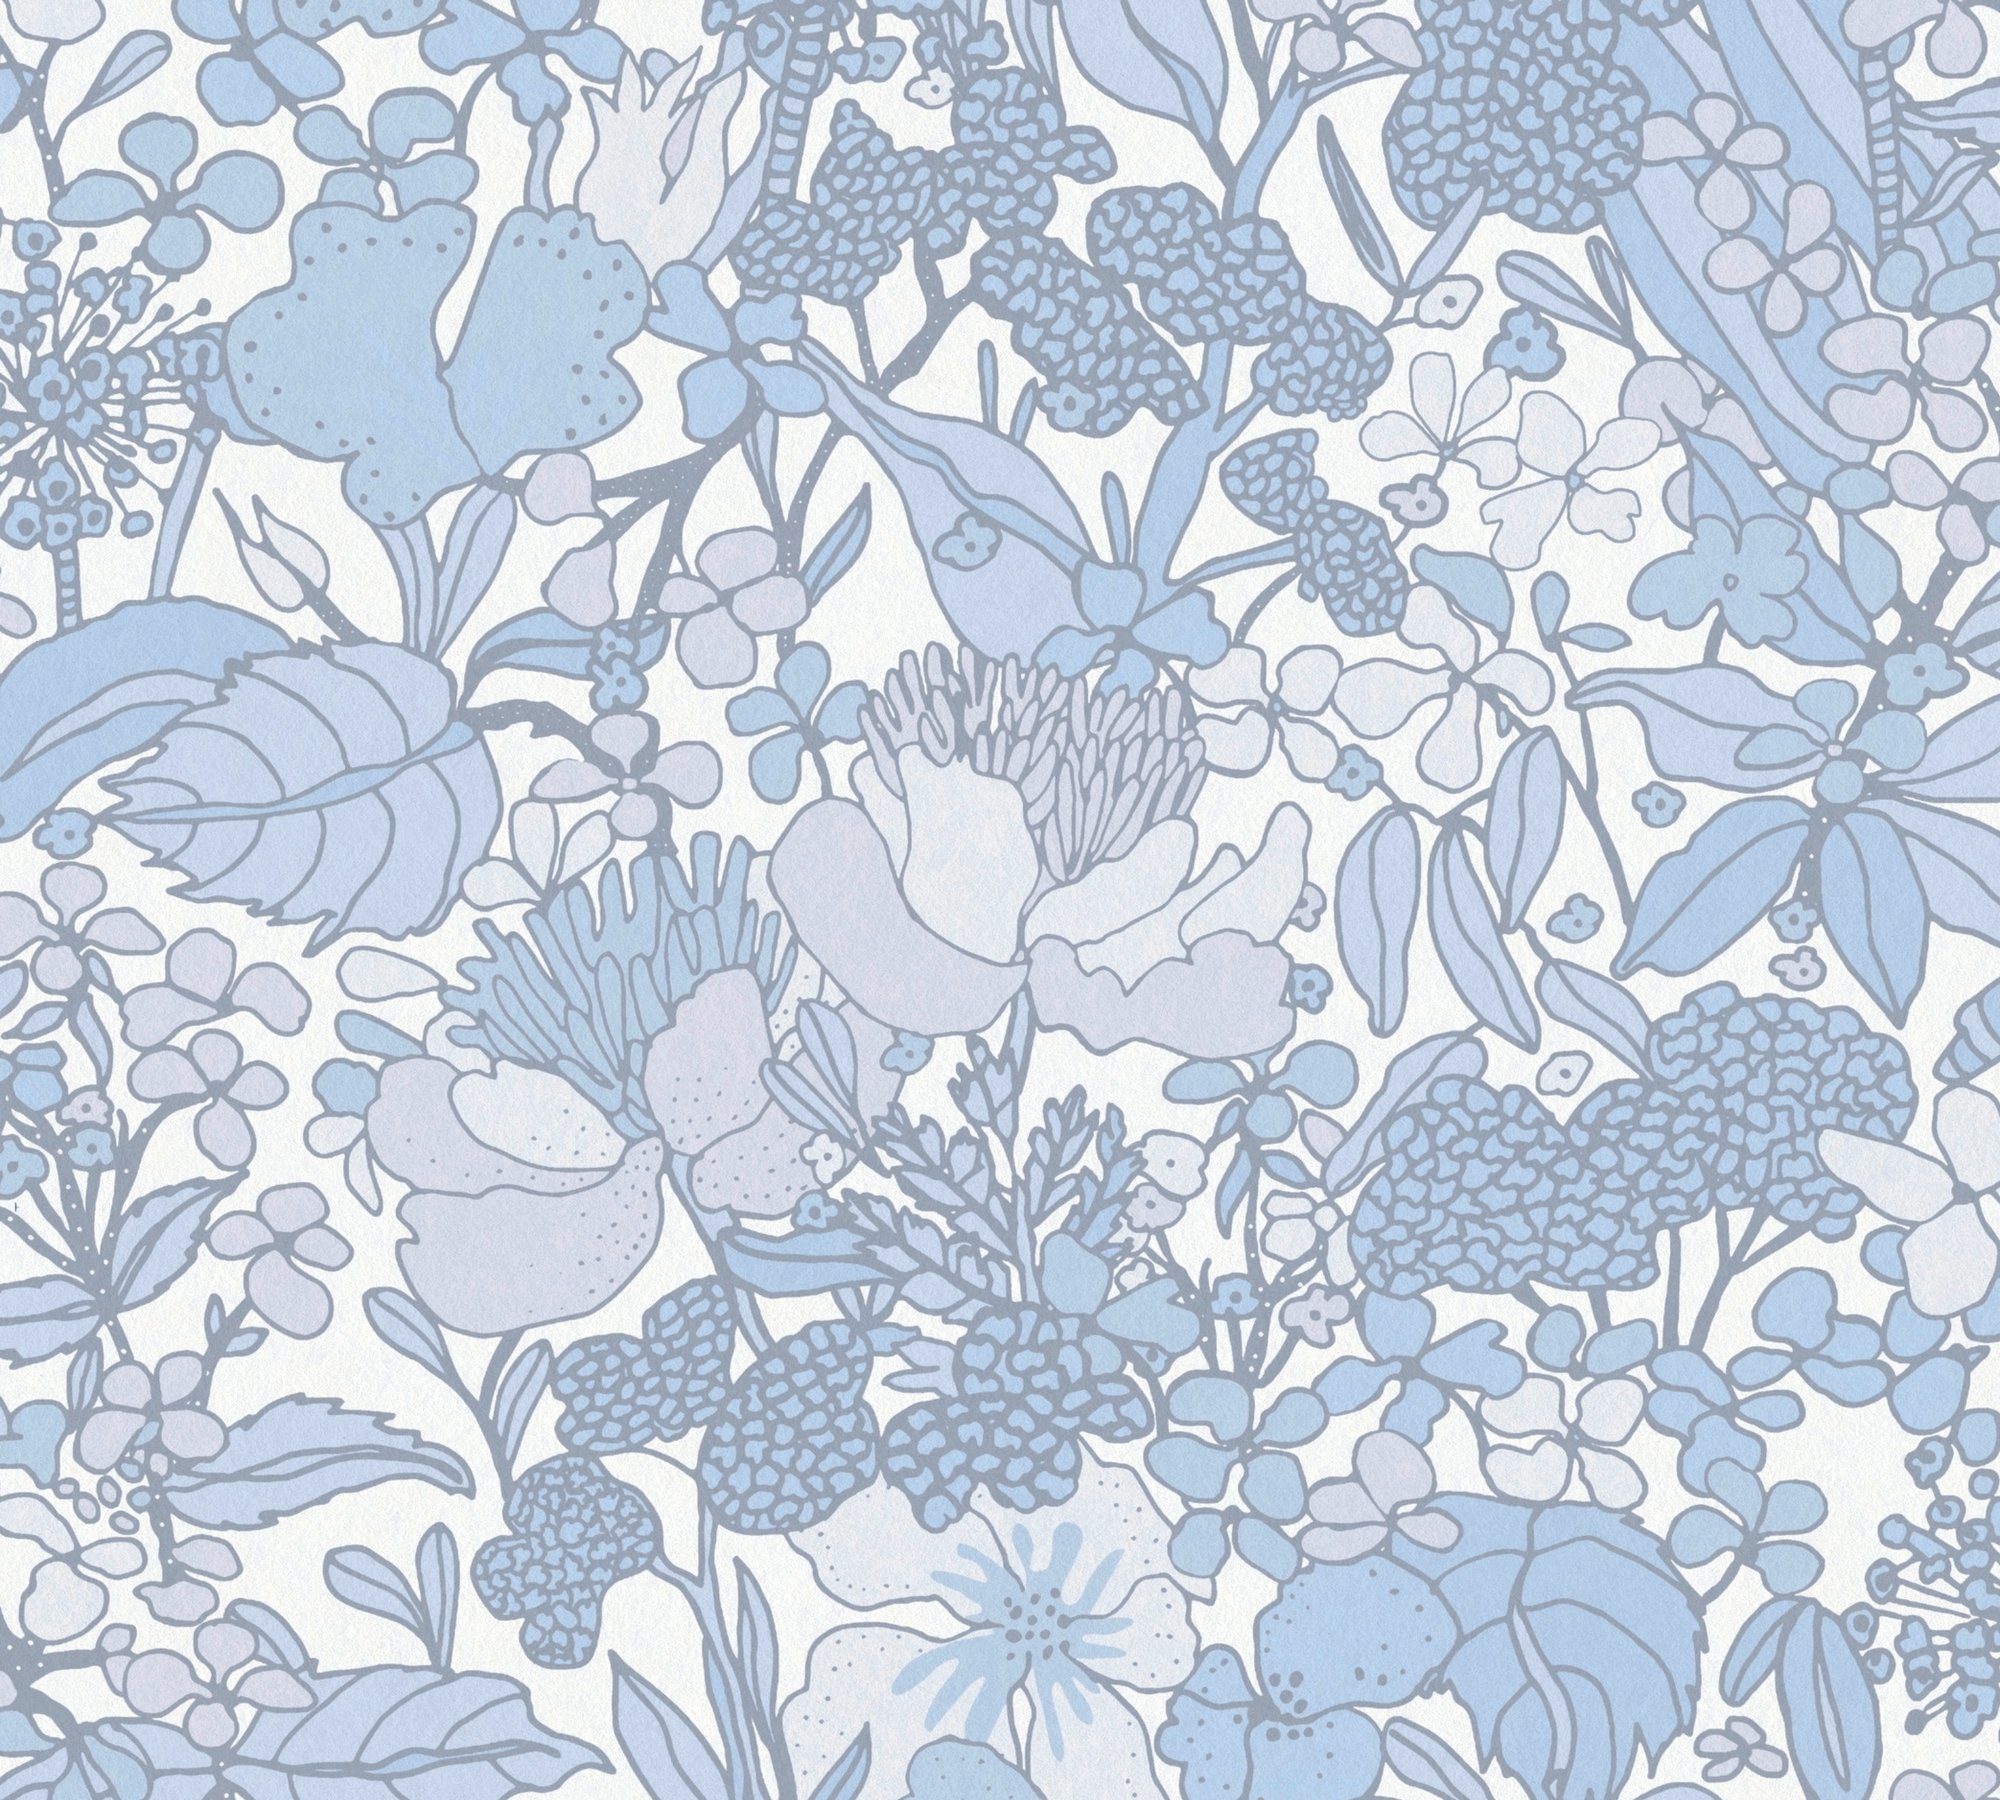 Vliestapete Tapete botanisch, Architects Impression, floral, Dschungel grau/blau/weiß Blumentapete Paper Floral glatt,